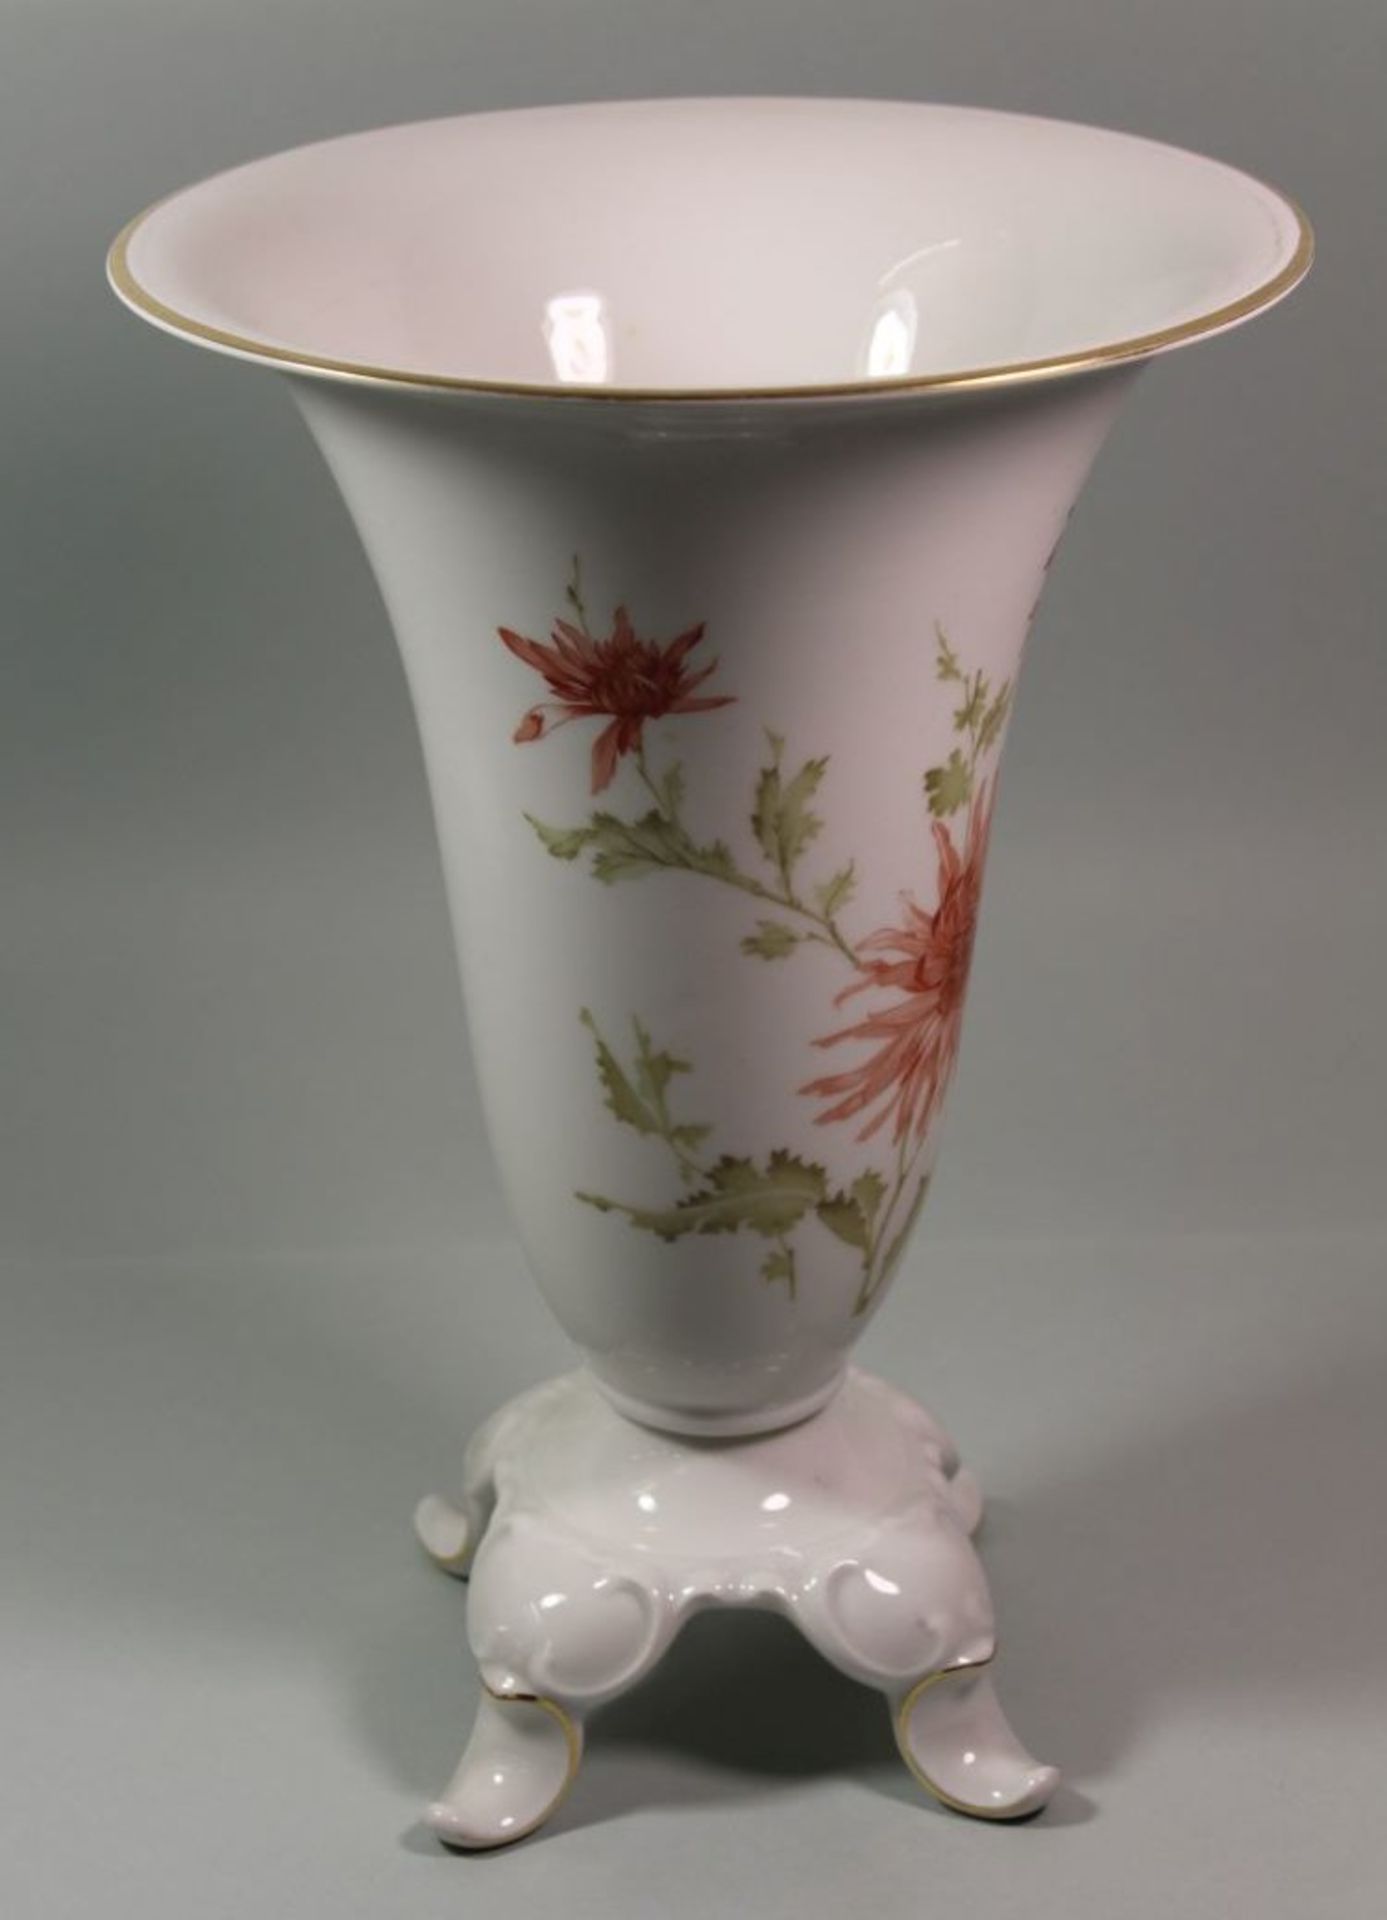 hohe Vase auf 4 Füssen "Hutschenreuther", florales Dekor, 1x Fuss geklebt, H-28,5cm. - Bild 2 aus 4